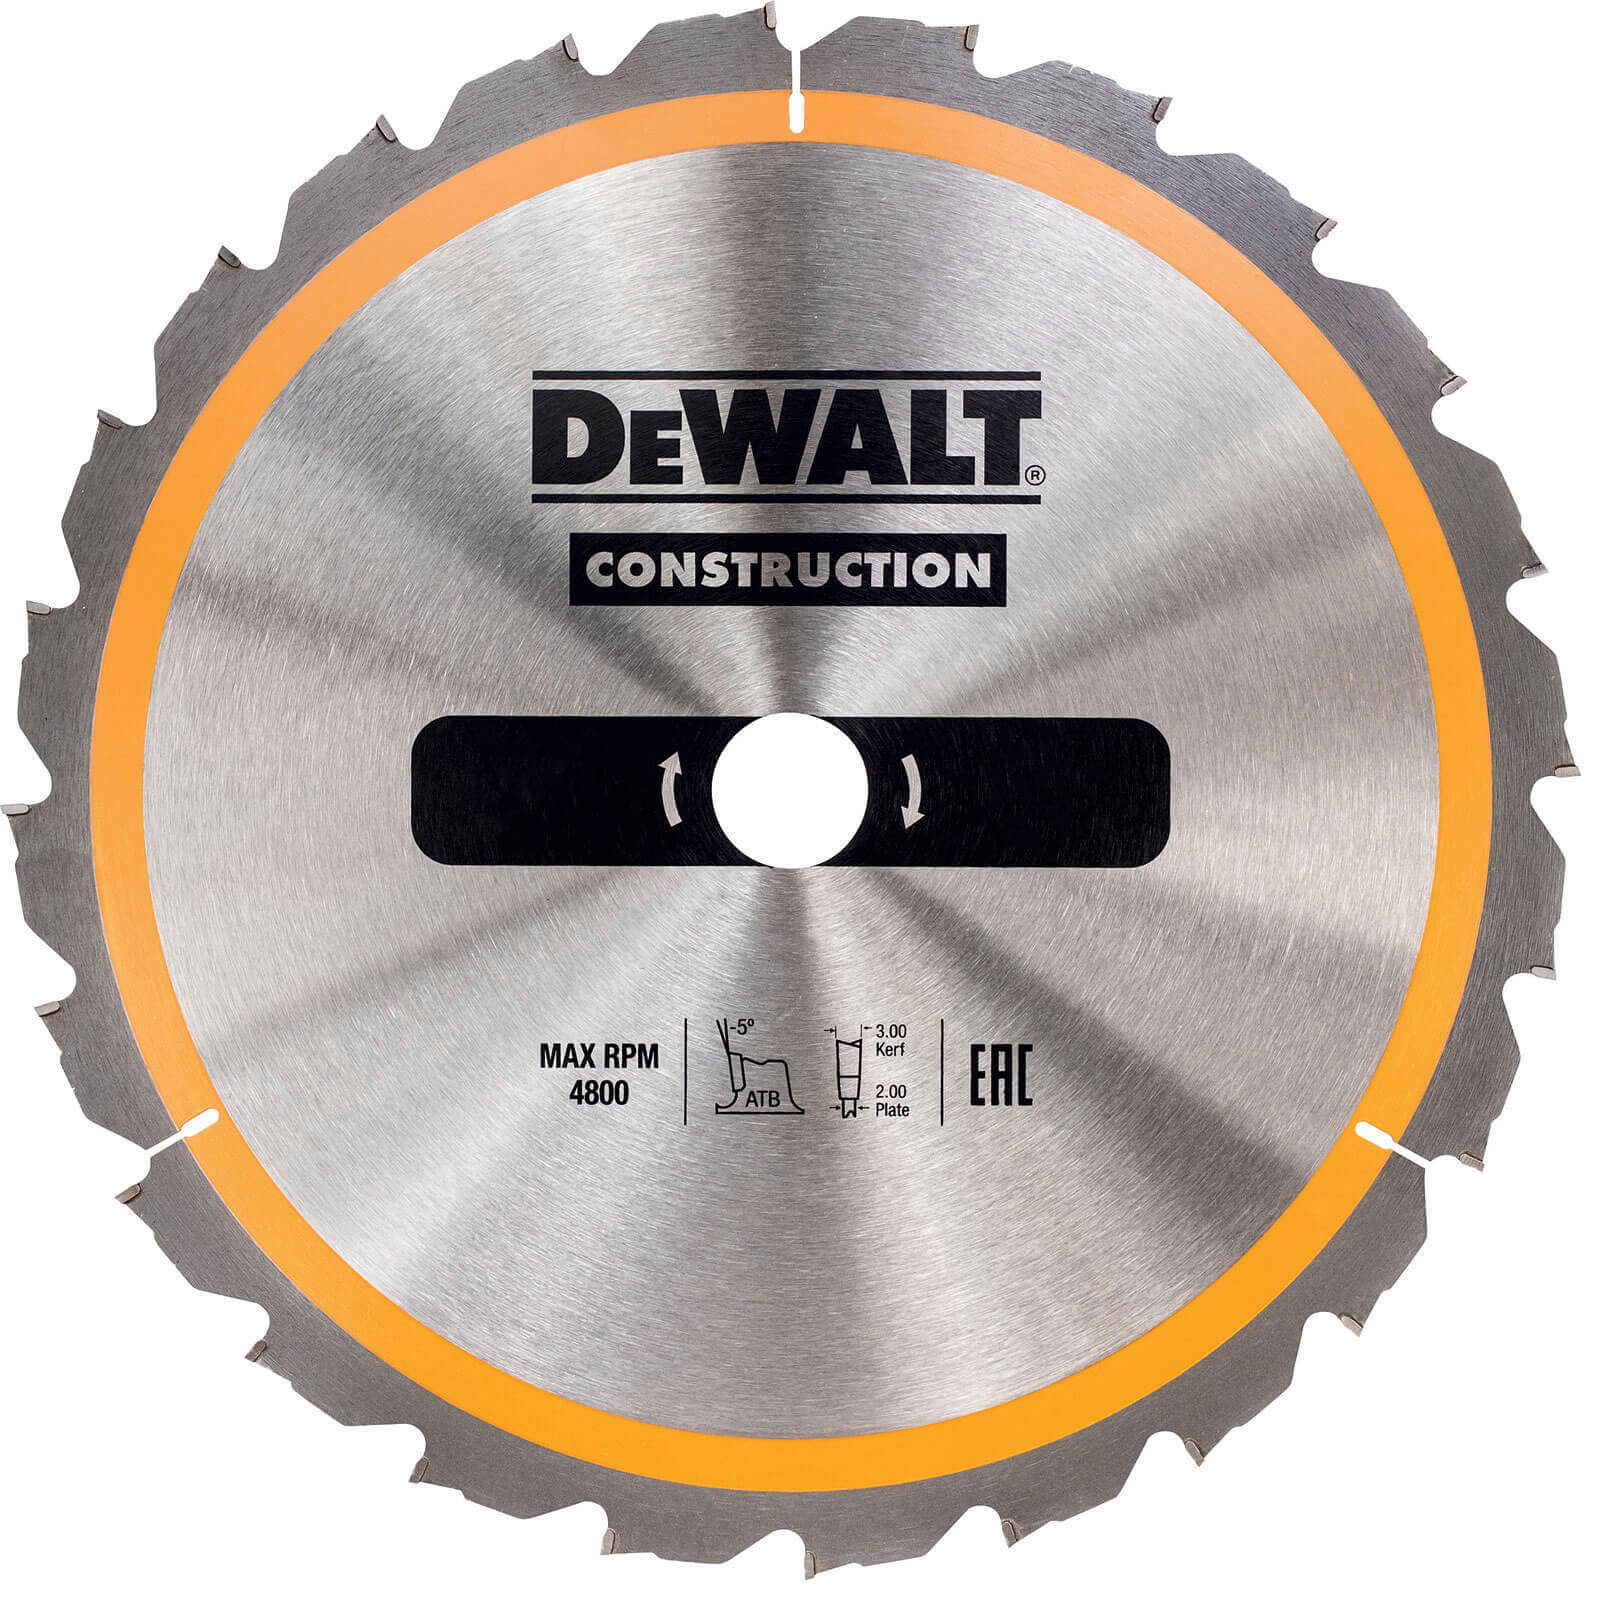 Photo of Dewalt Construction Circular Saw Blade 190mm 24t 30mm